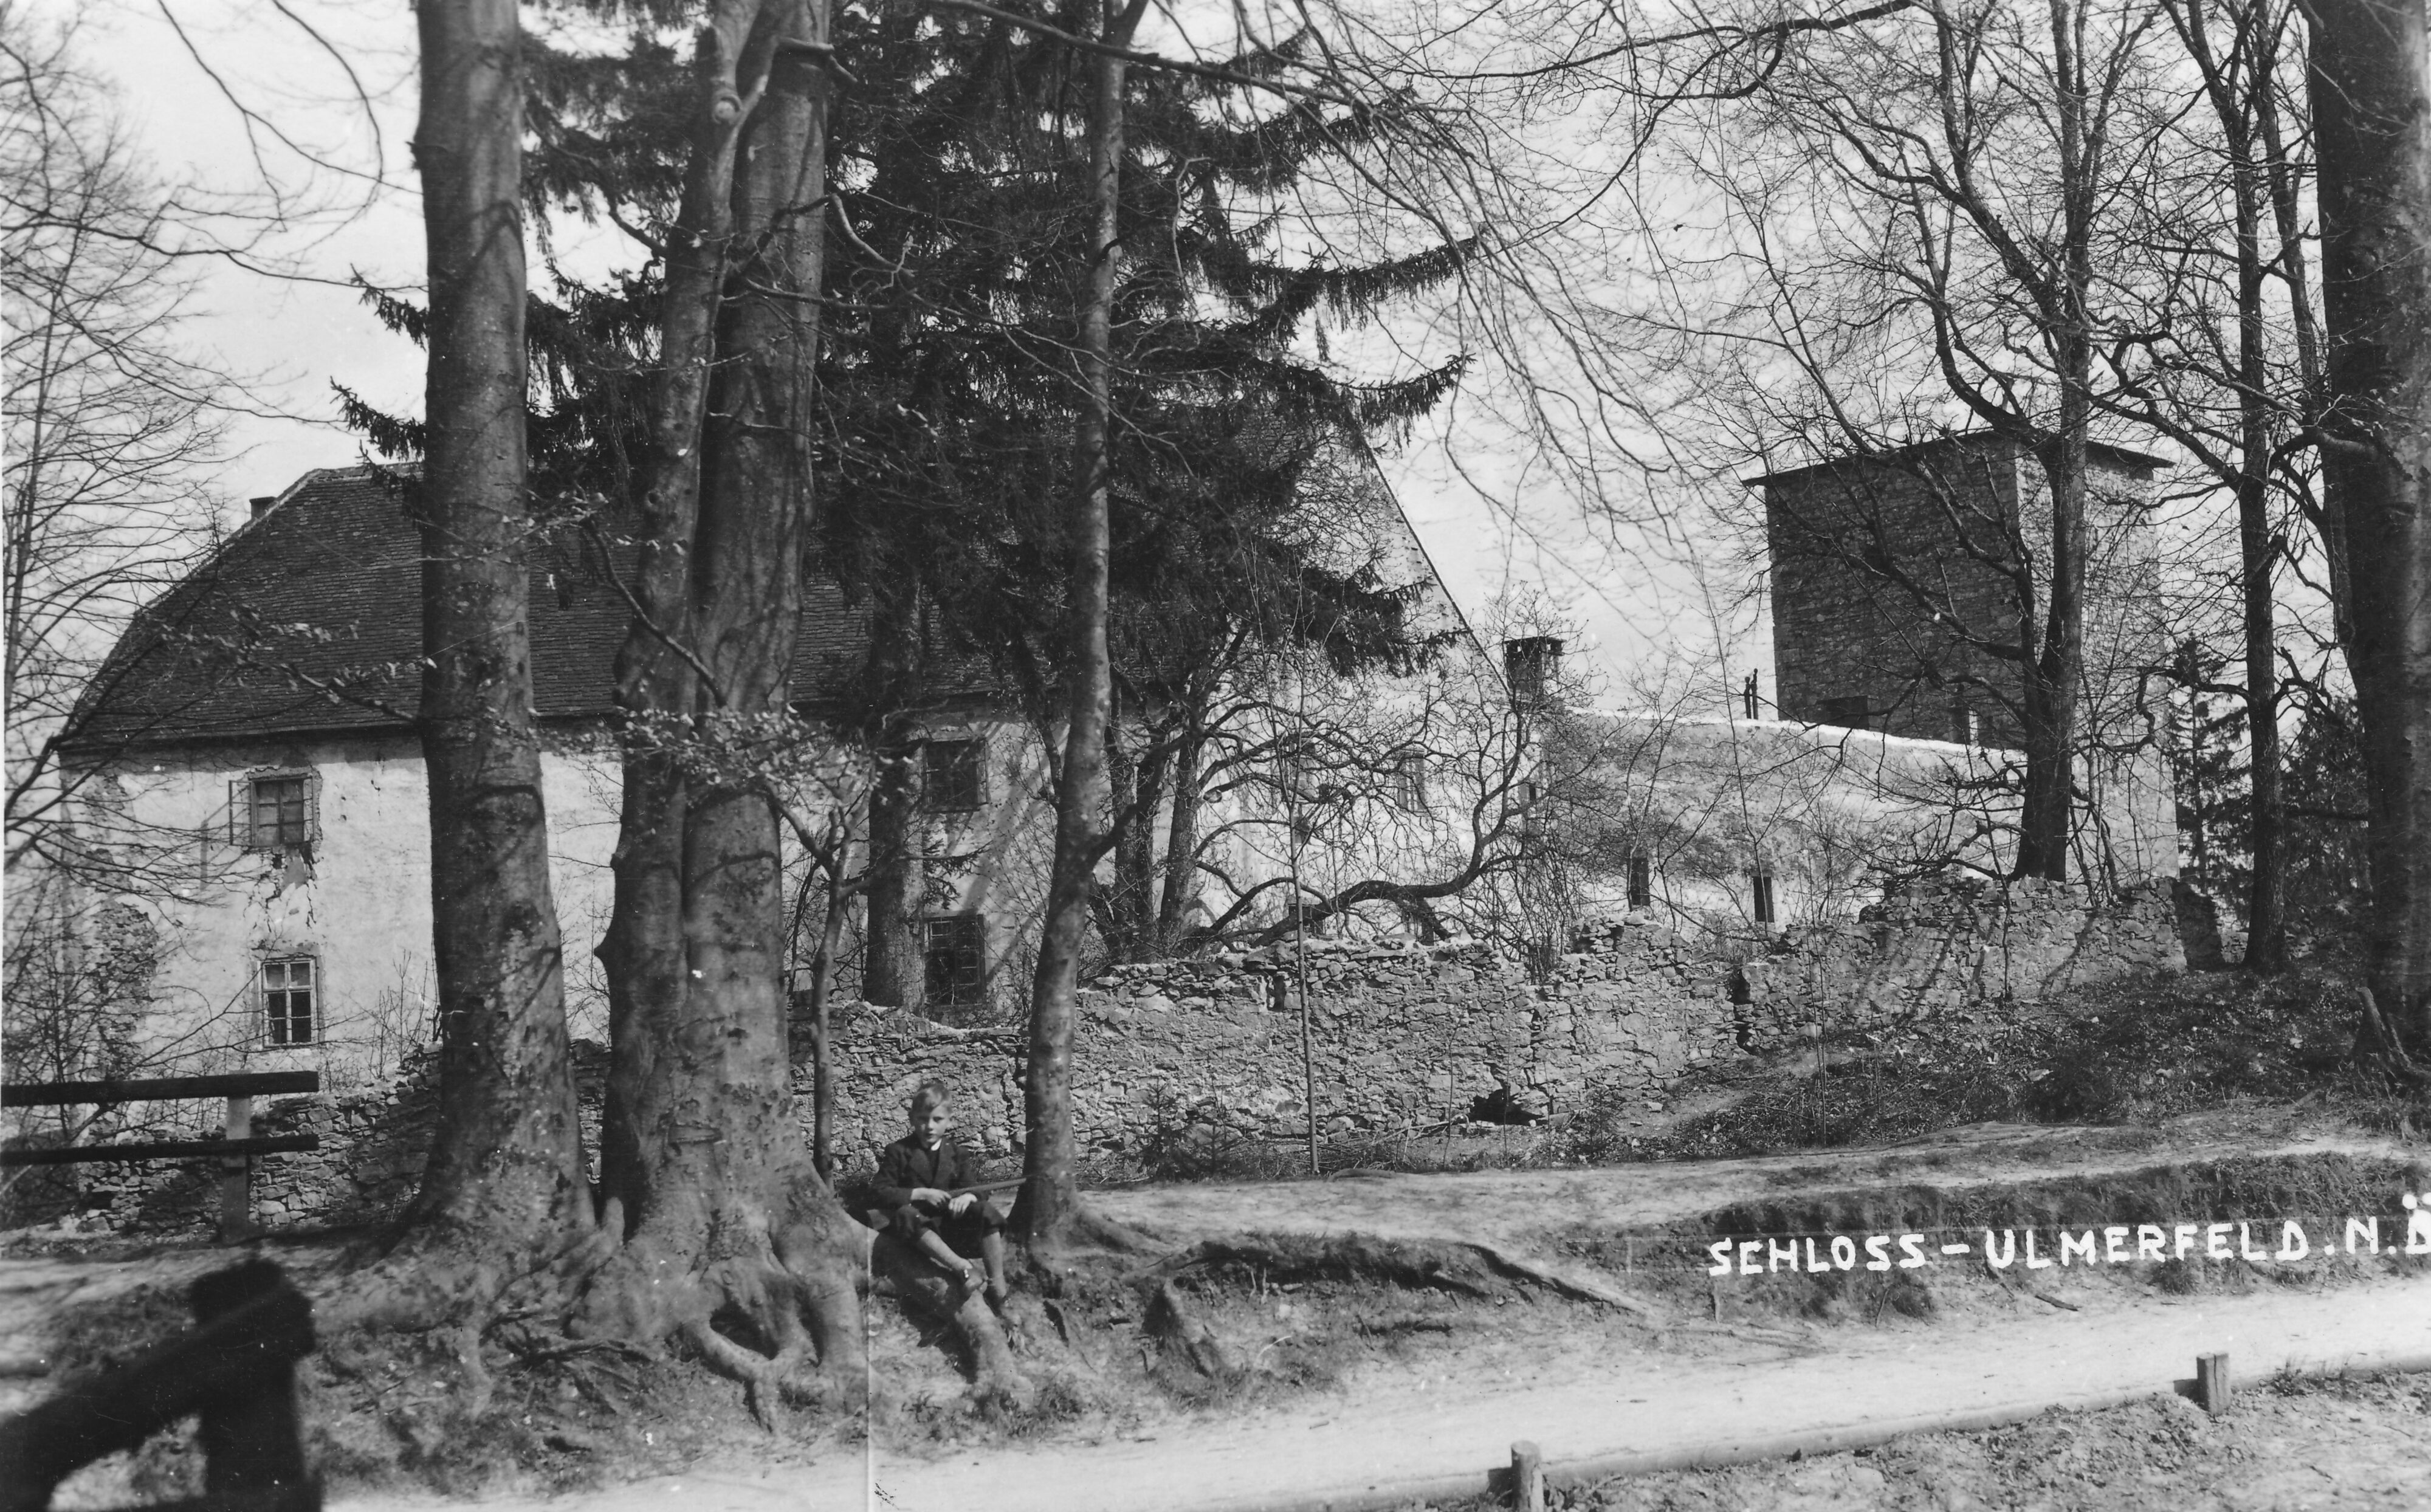 Schloss Ulmerfeld um 1930